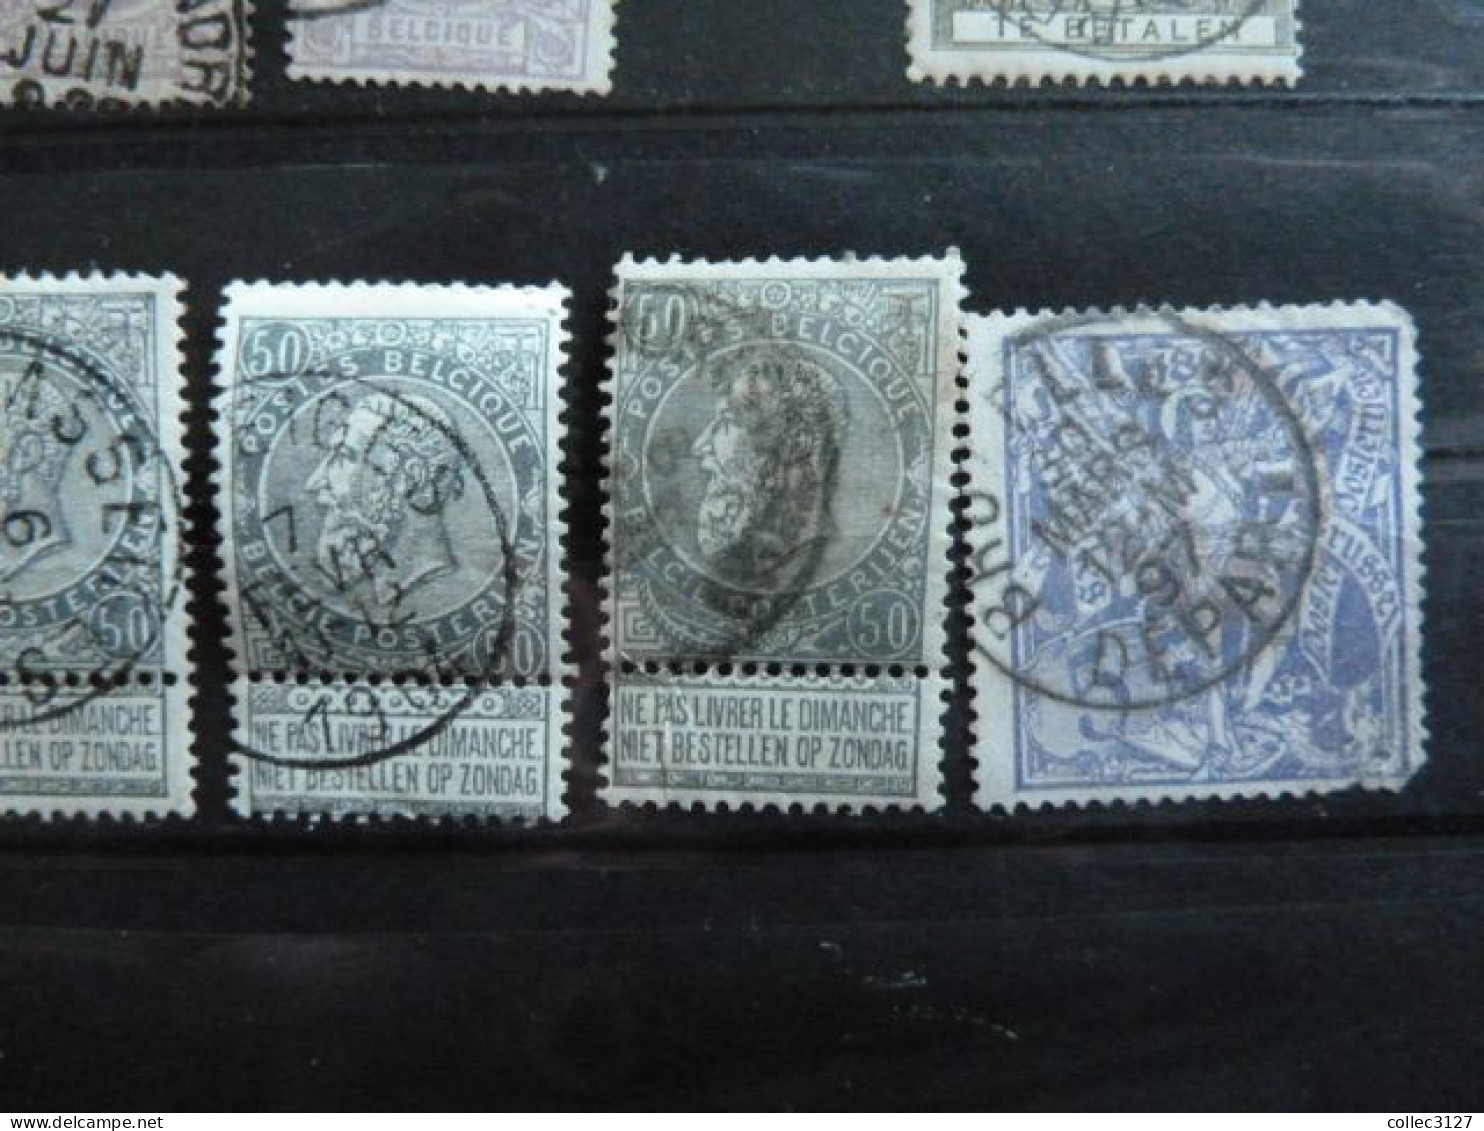 H2 - Belgique - Petit lot de timbres classiques - voirs photos détaillées